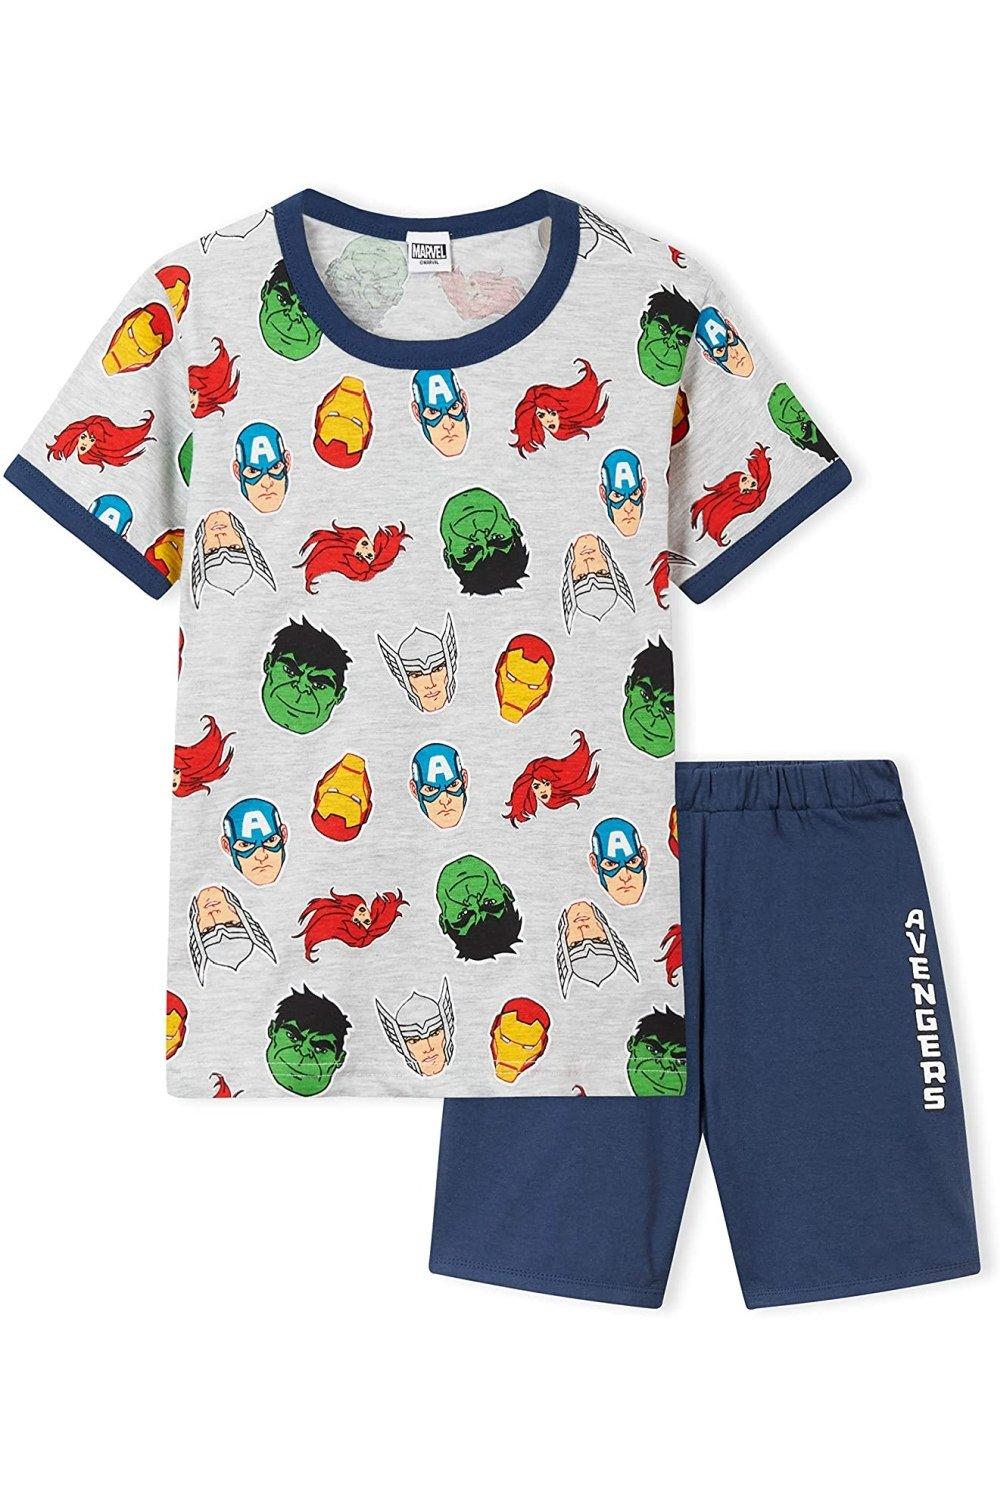 Короткий пижамный комплект Avengers Marvel, мультиколор